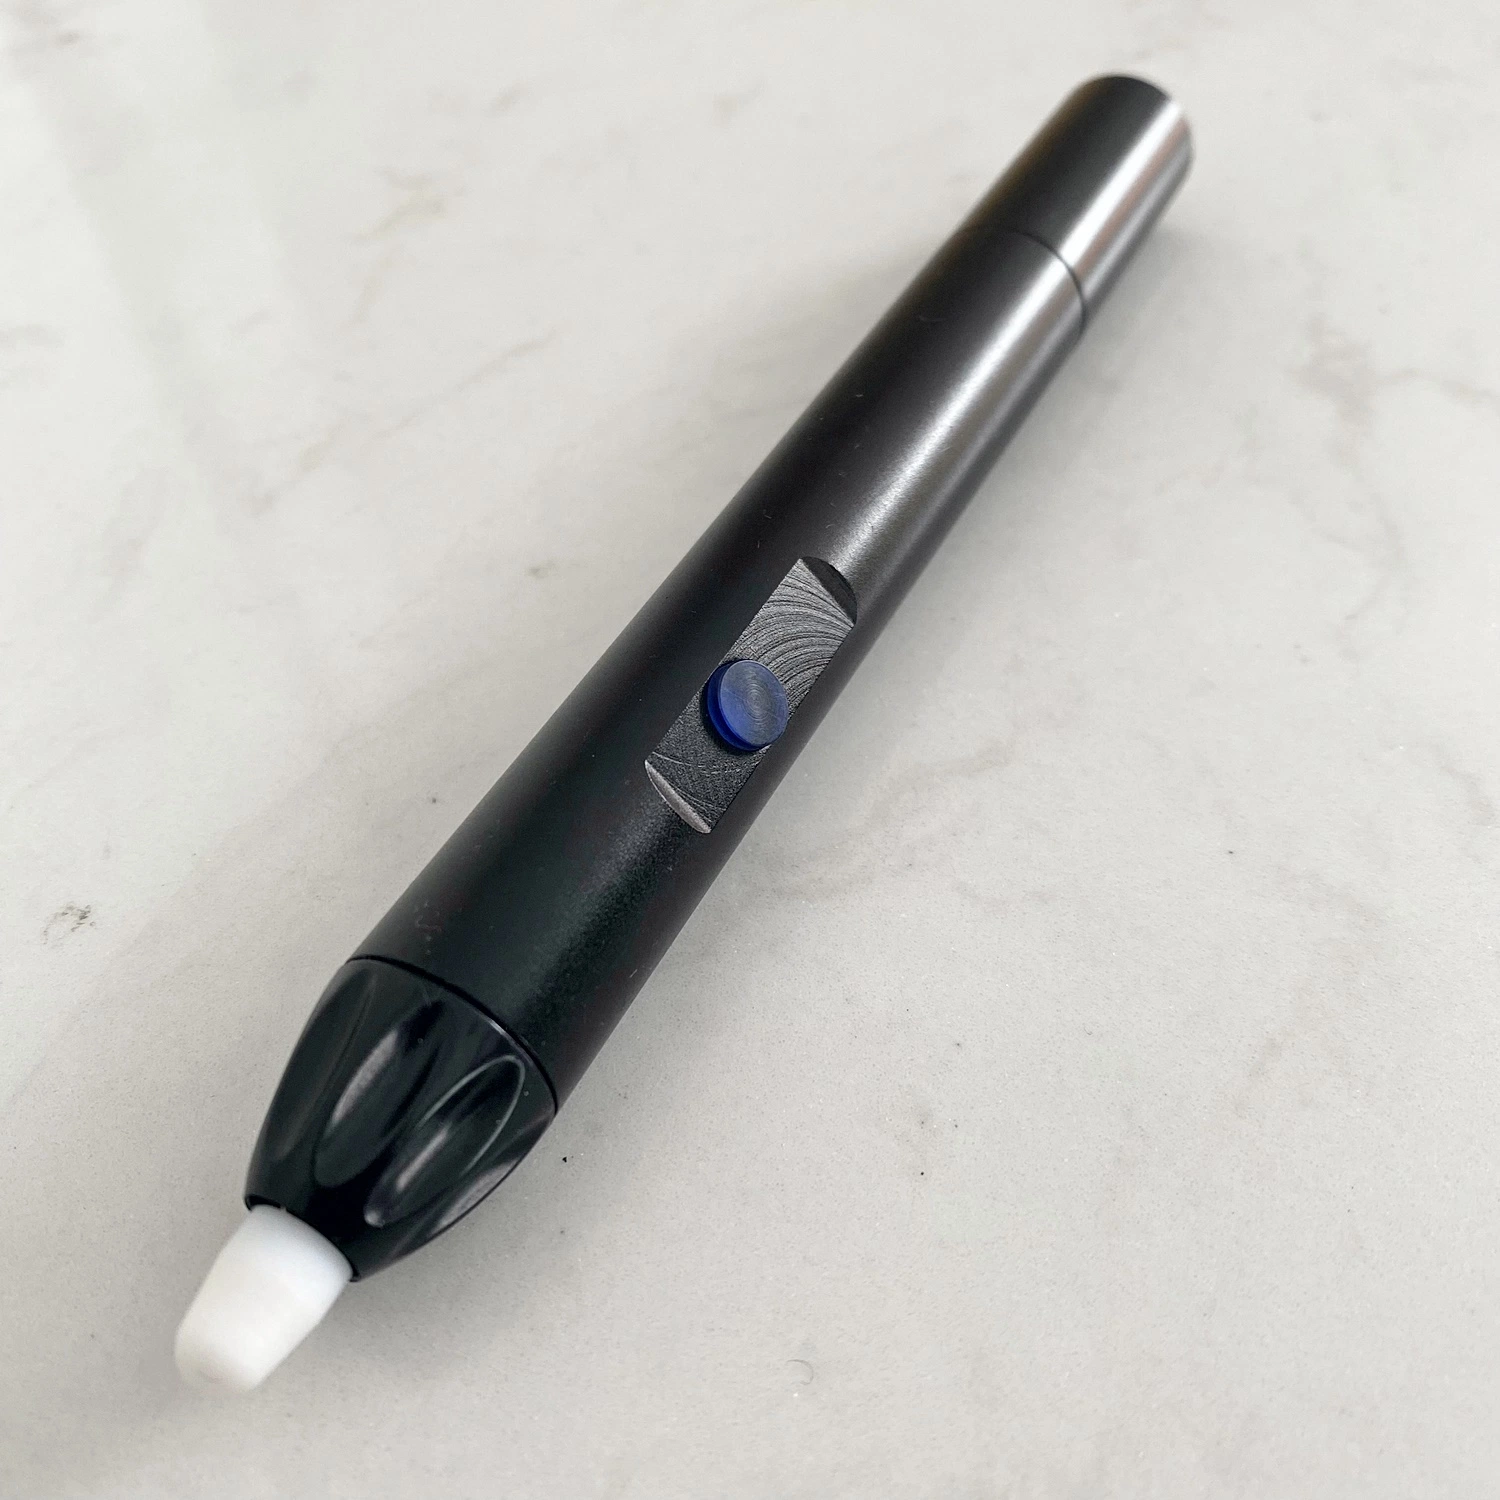 Heißer Verkauf Interaktive Whiteboard Infrarot-Stift aufladbare elektrische Stift für Schule und Büro Tallpic P30m